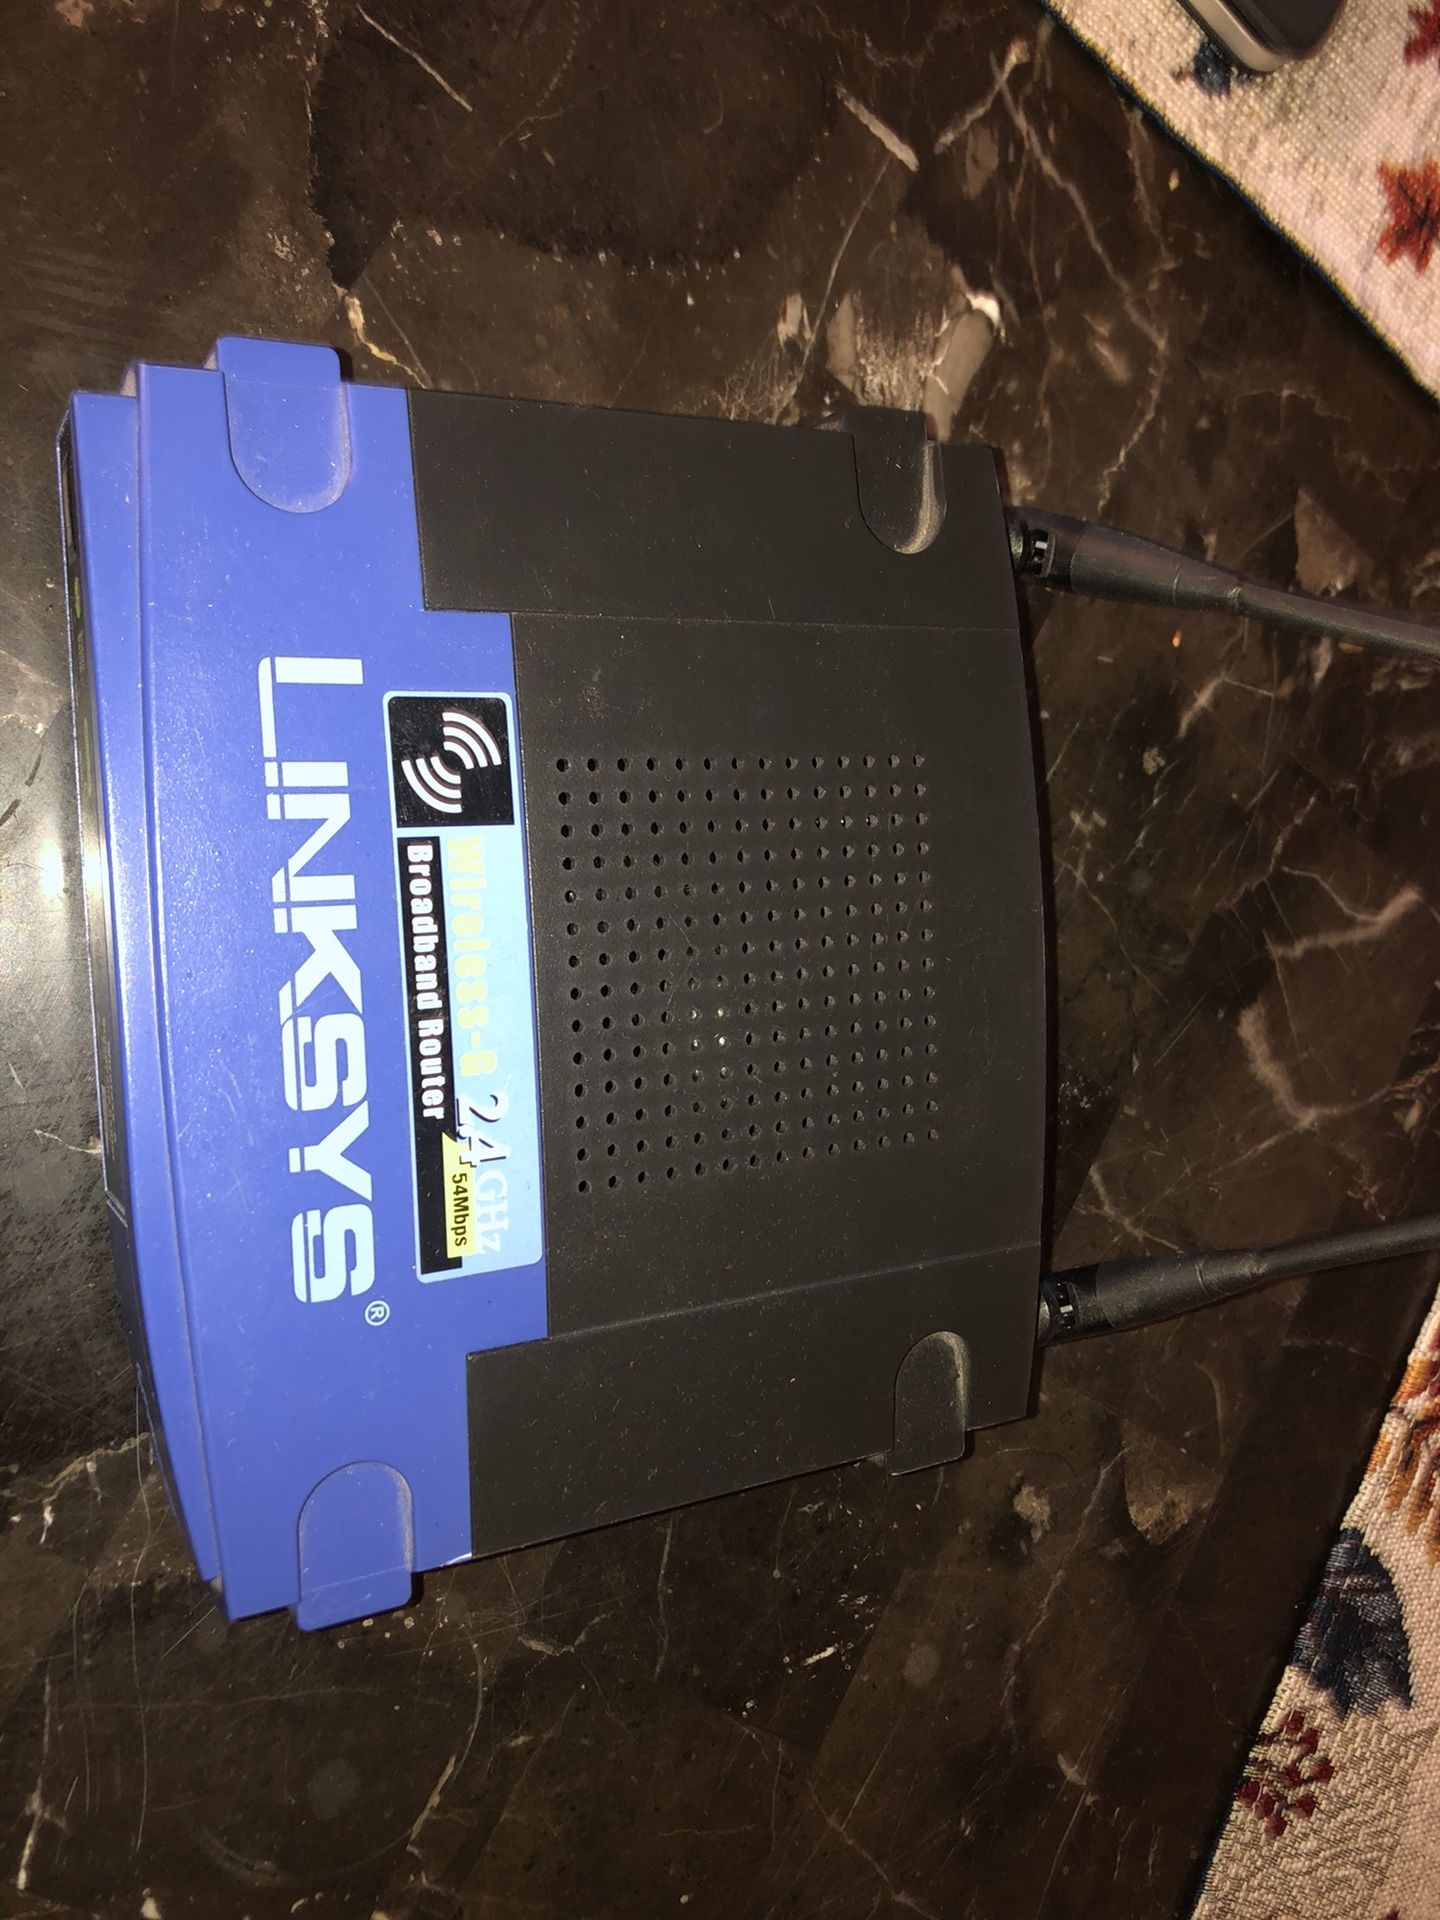 Linksys Wireless-G 2.4ghz WiFi router